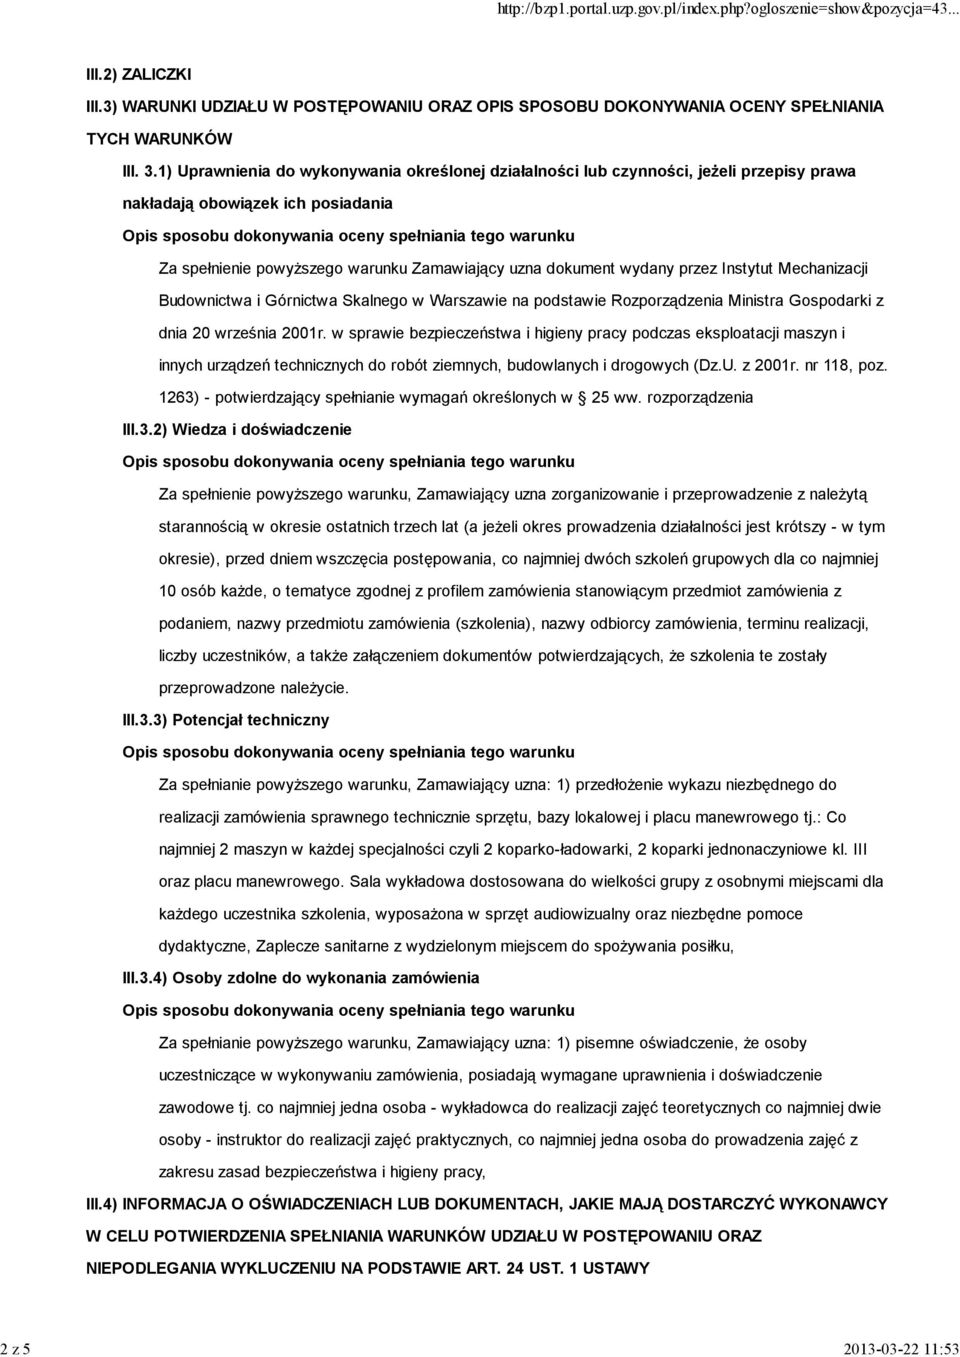 Instytut Mechanizacji Budownictwa i Górnictwa Skalnego w Warszawie na podstawie Rozporządzenia Ministra Gospodarki z dnia 20 września 2001r.